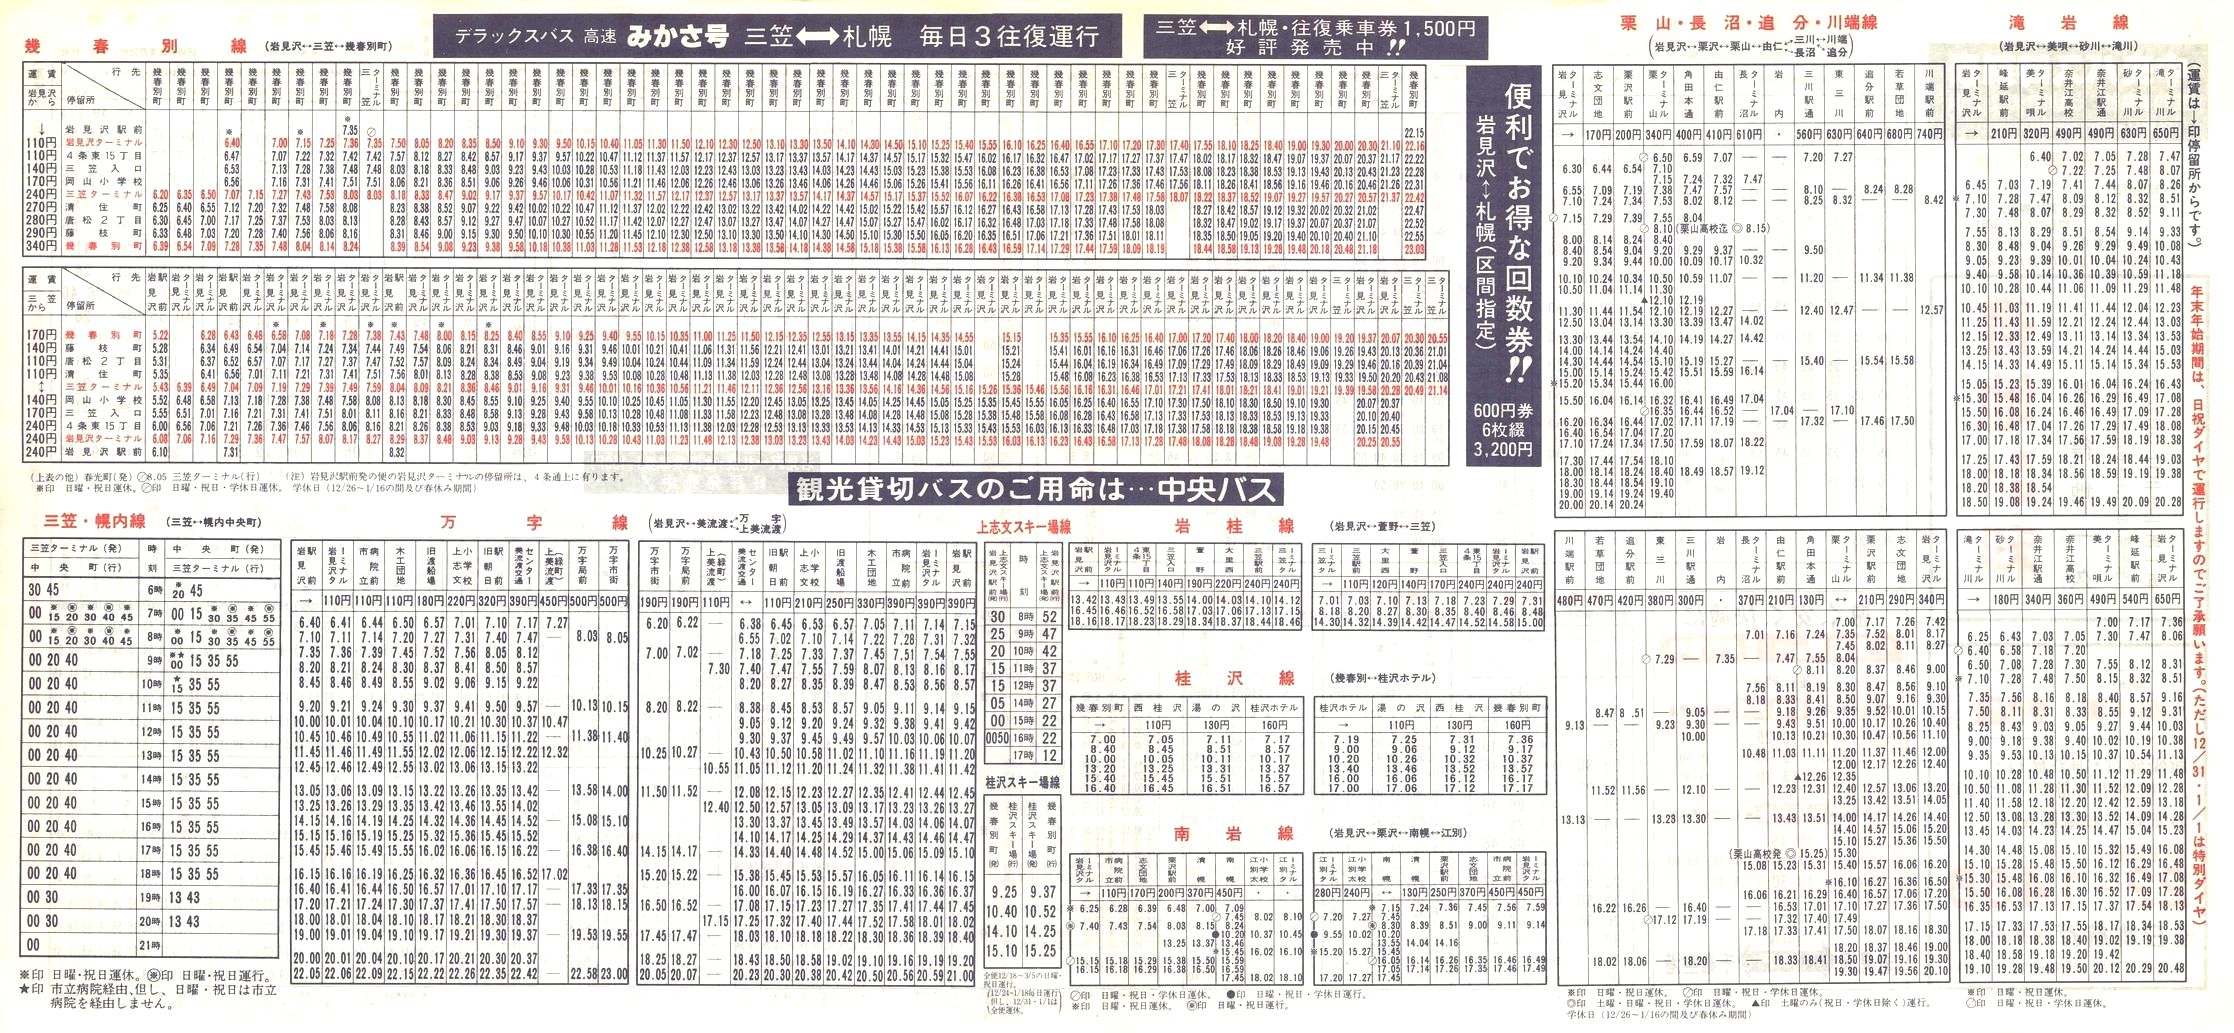 1988-12-01改正_北海道中央バス(空知)_岩見沢管内線時刻表裏面